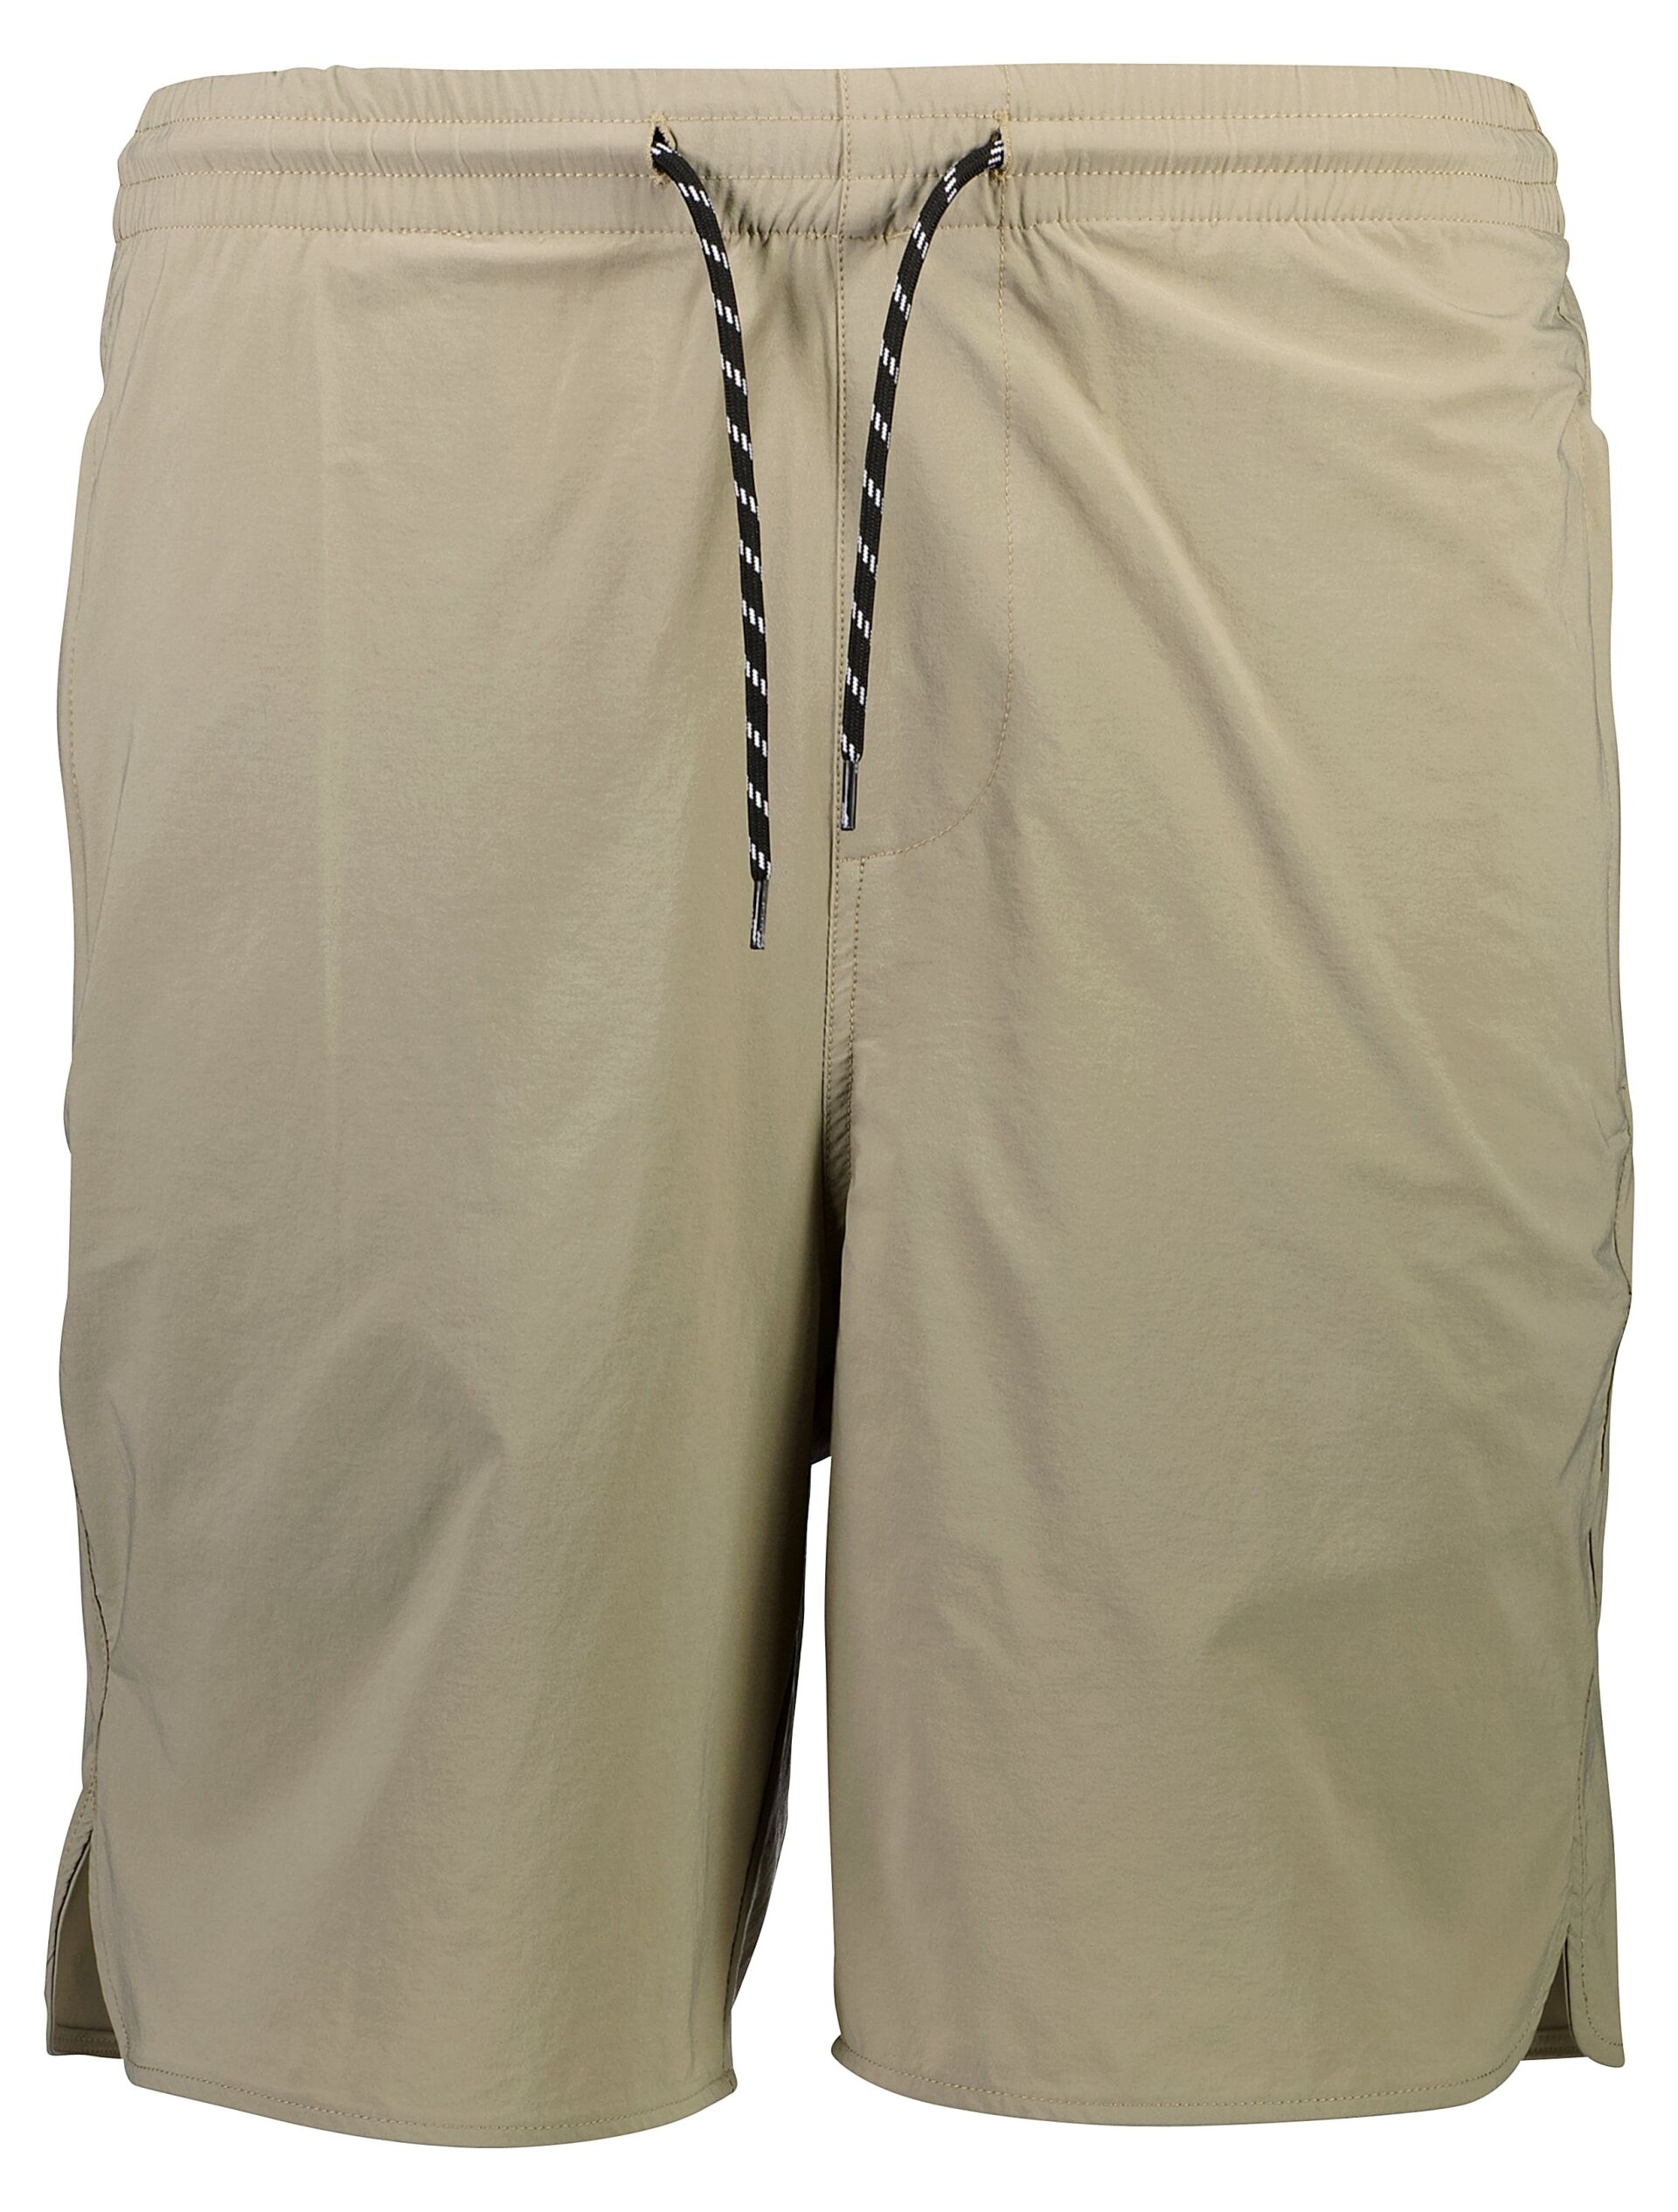 Casual shorts Casual shorts Brown 30-505088